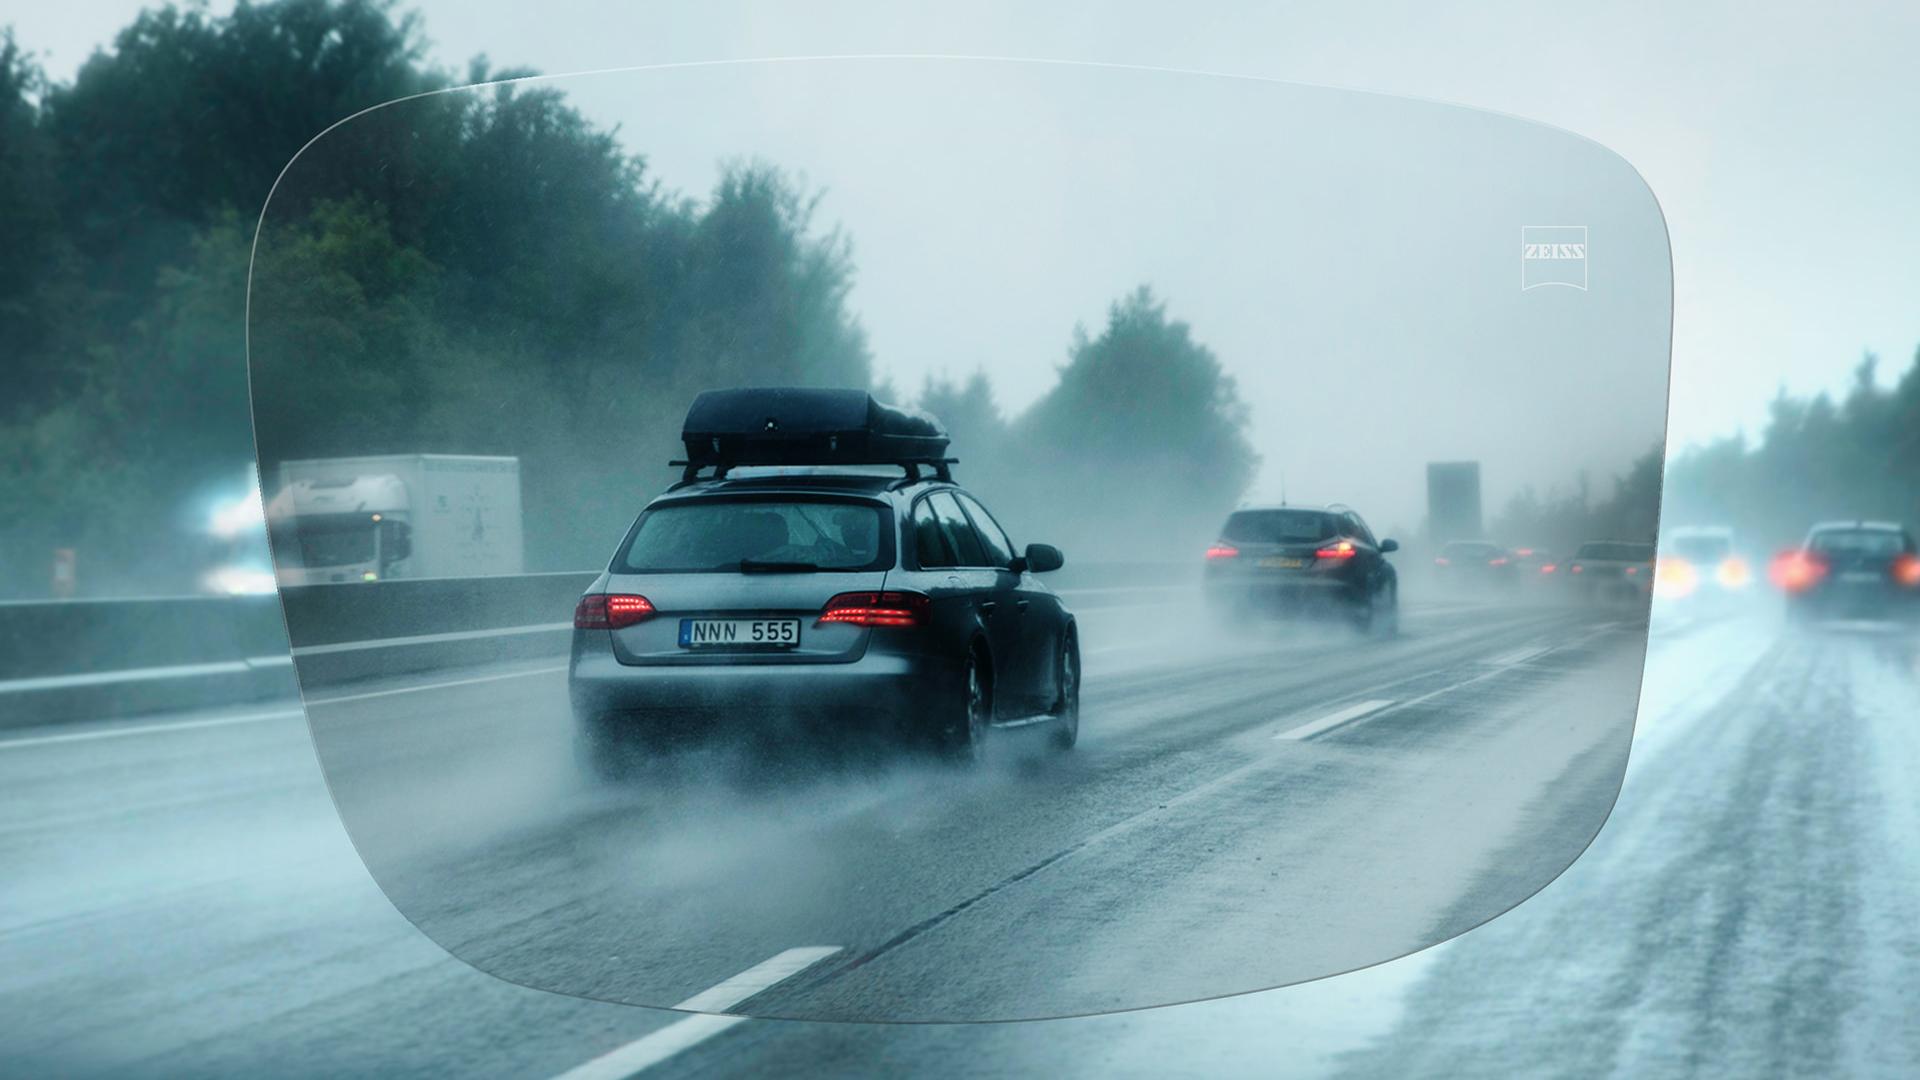 Visning af en motorvej set gennem ZEISS DriveSafe Single Vision brilleglas i regnvejr 